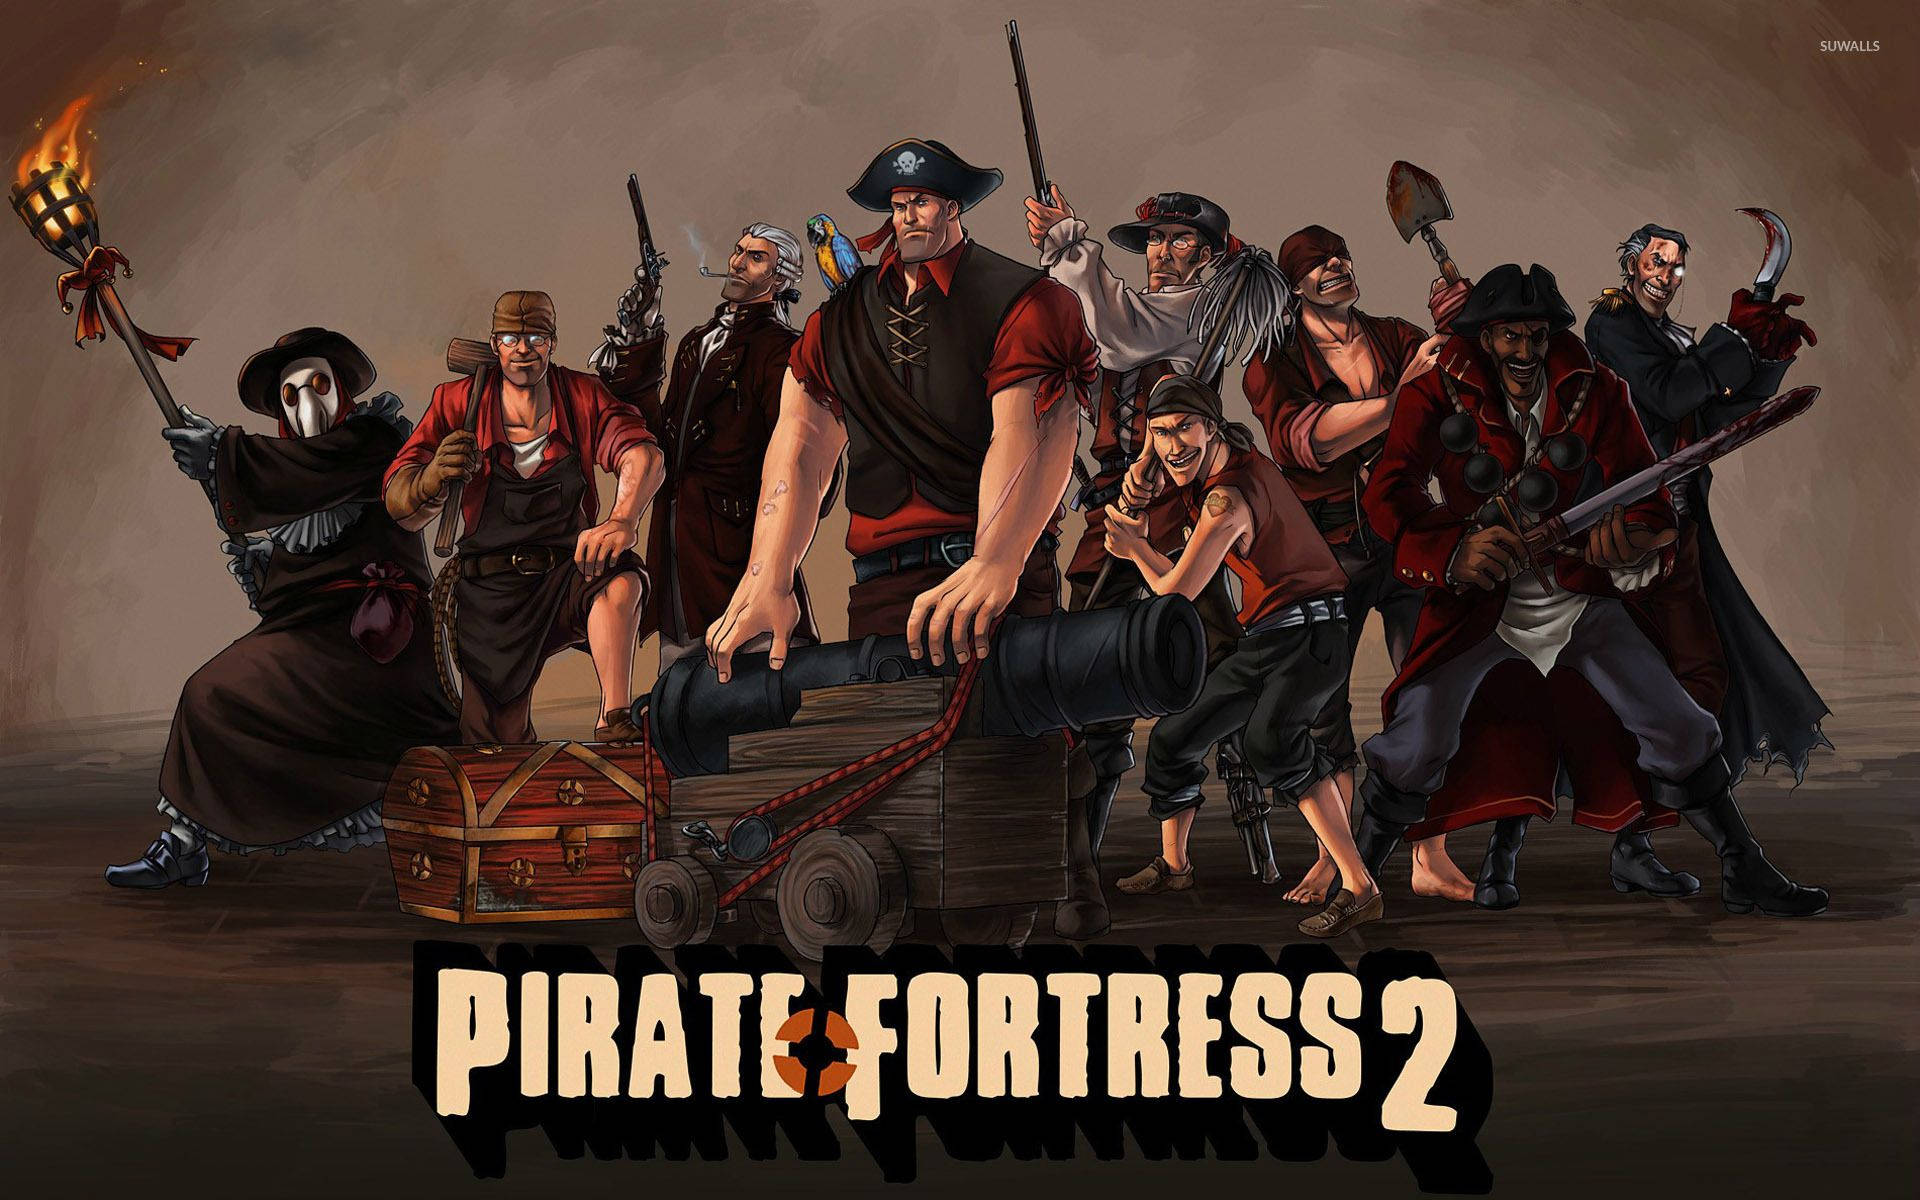 Team Fortress 2 Pirate Fanart Tapet: Se listen over piratfanart, der er inspireret af multiplayer-skørepladsen. Wallpaper